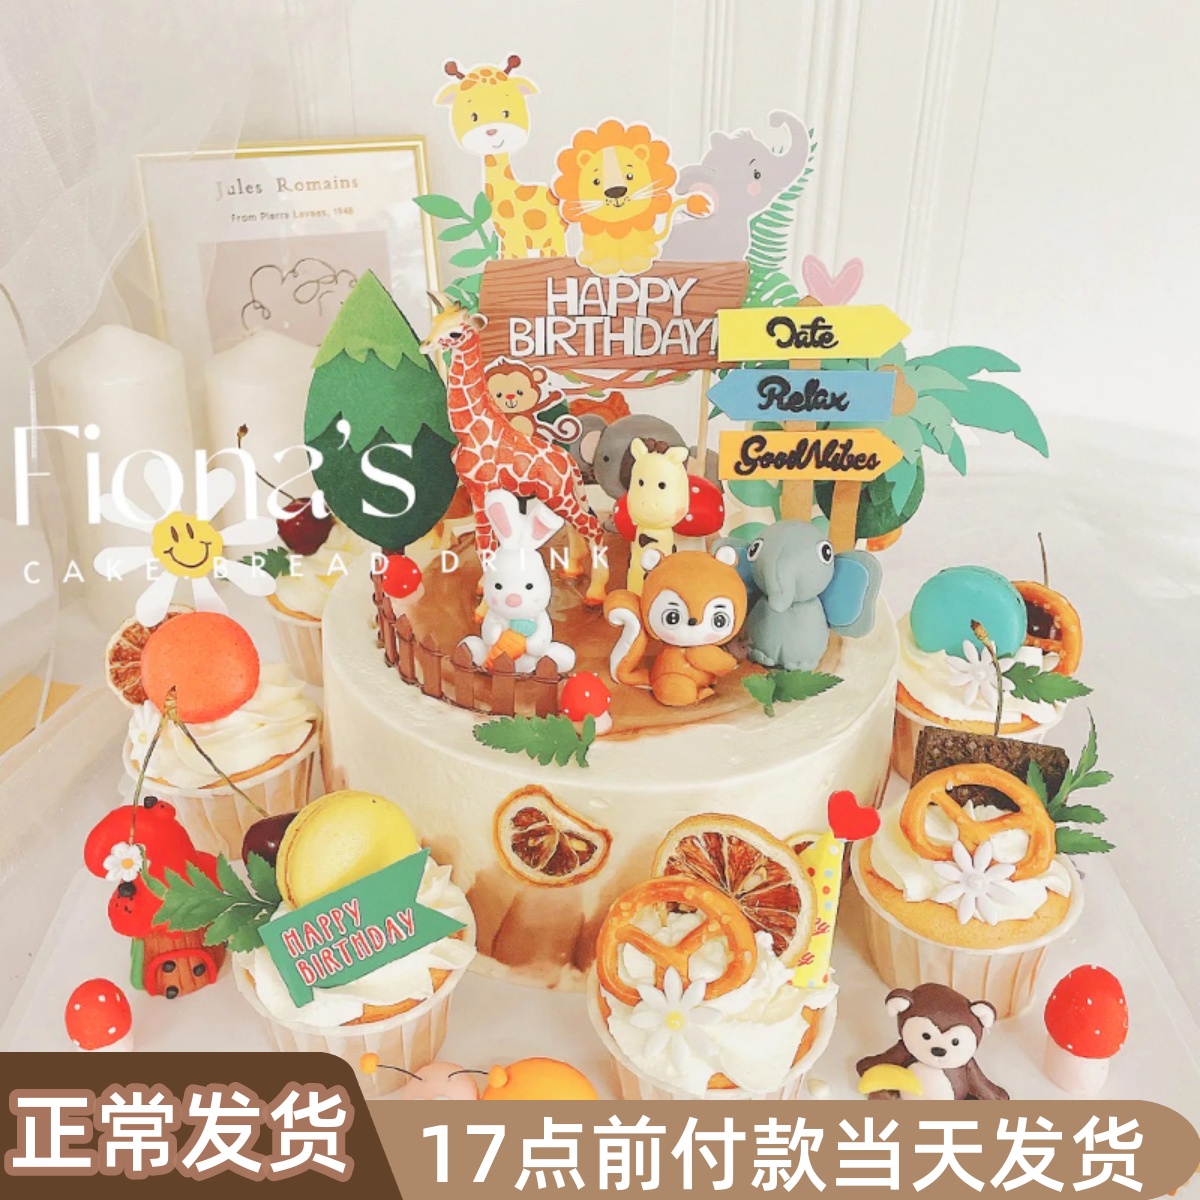 烘焙蛋糕装饰宝宝插件生日可爱熊猫长颈鹿狮子软陶森林小动物摆件